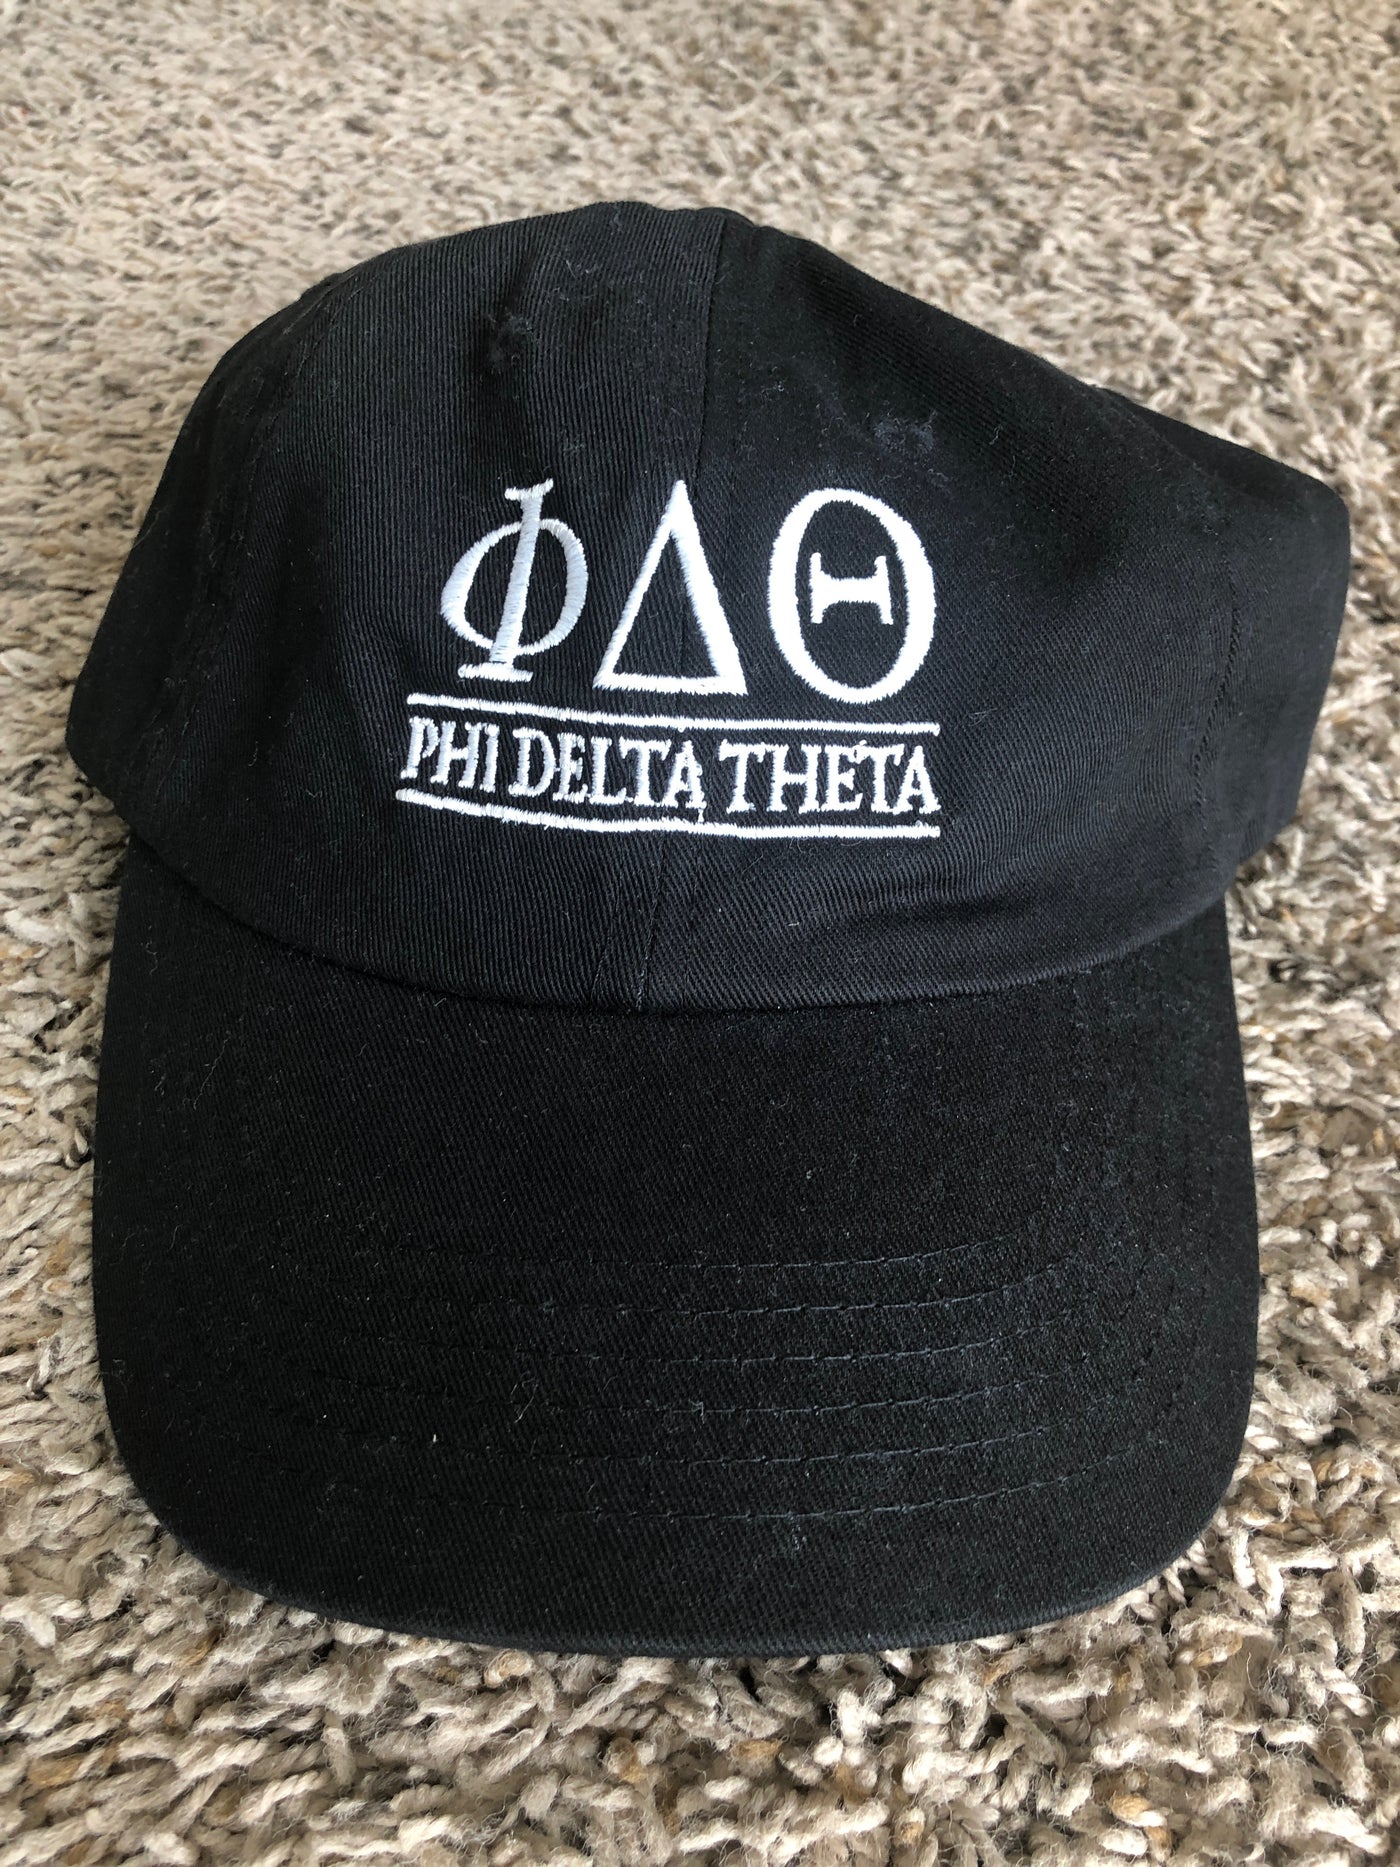 Phi Delta Theta lettered hat